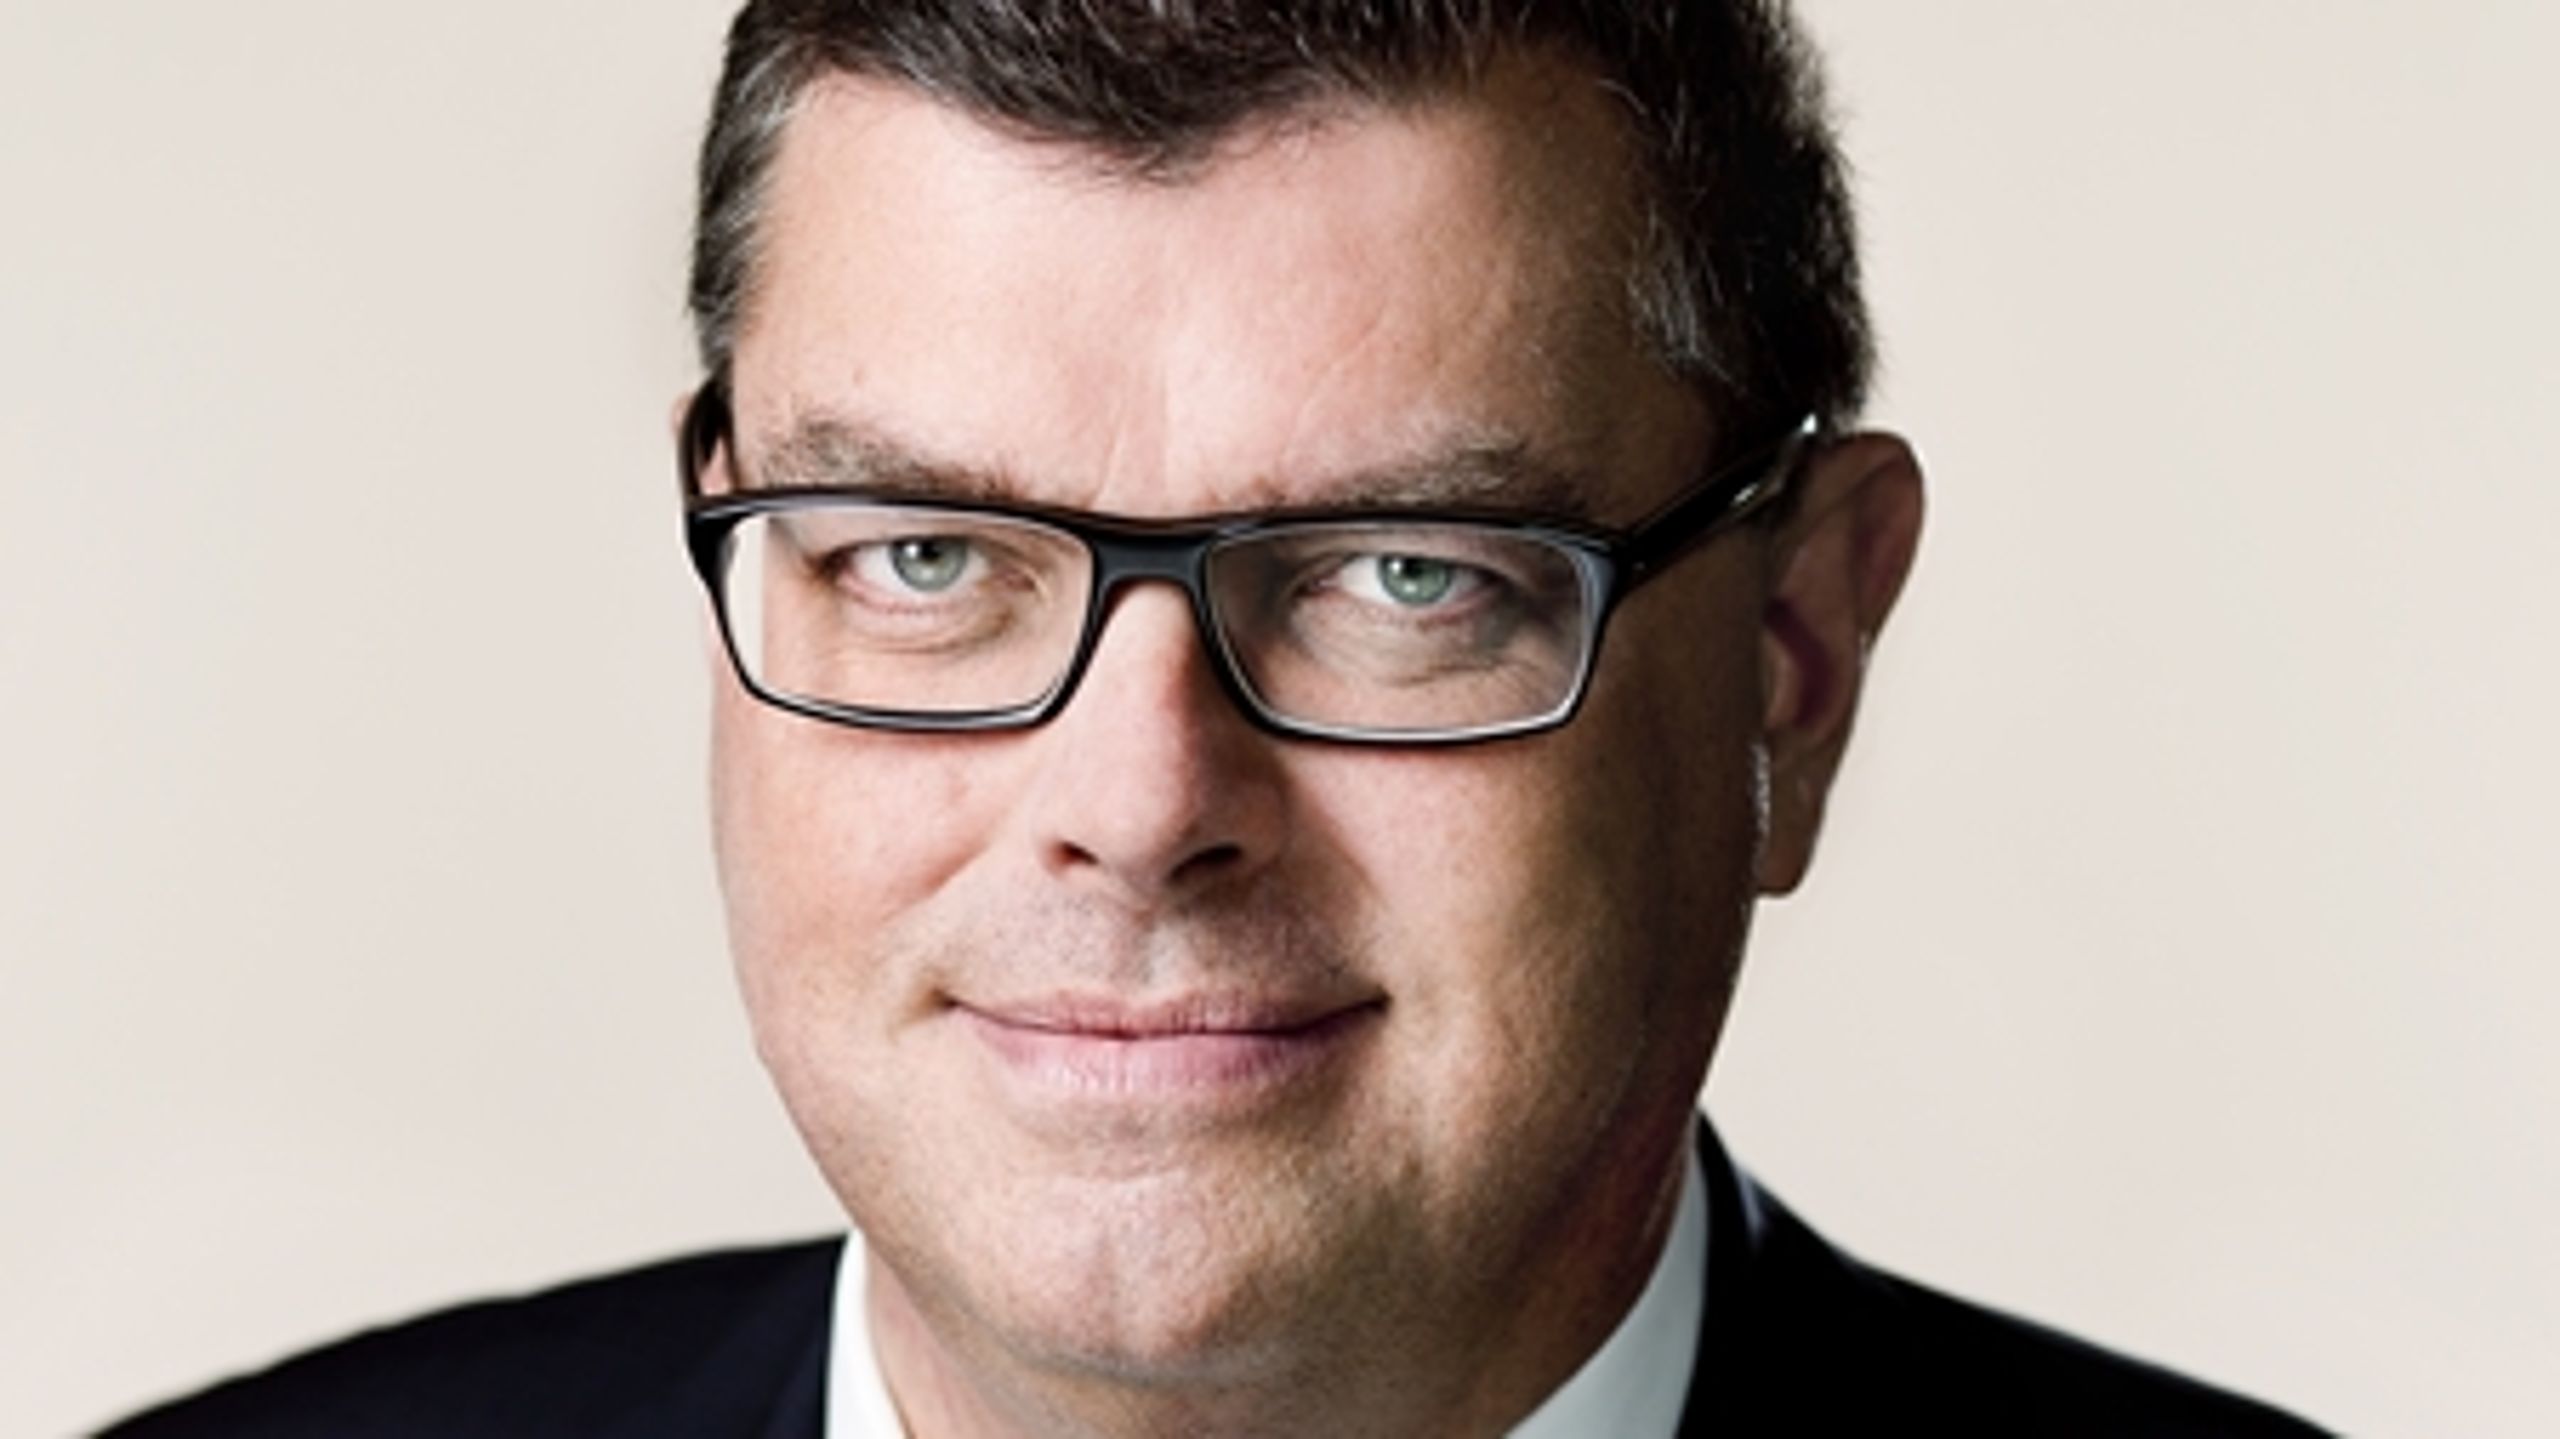 Tirsdag den 13. maj 2014 rundede handel- og udviklingsminister Mogens Jensen 100 dage på sin ministertaburet.